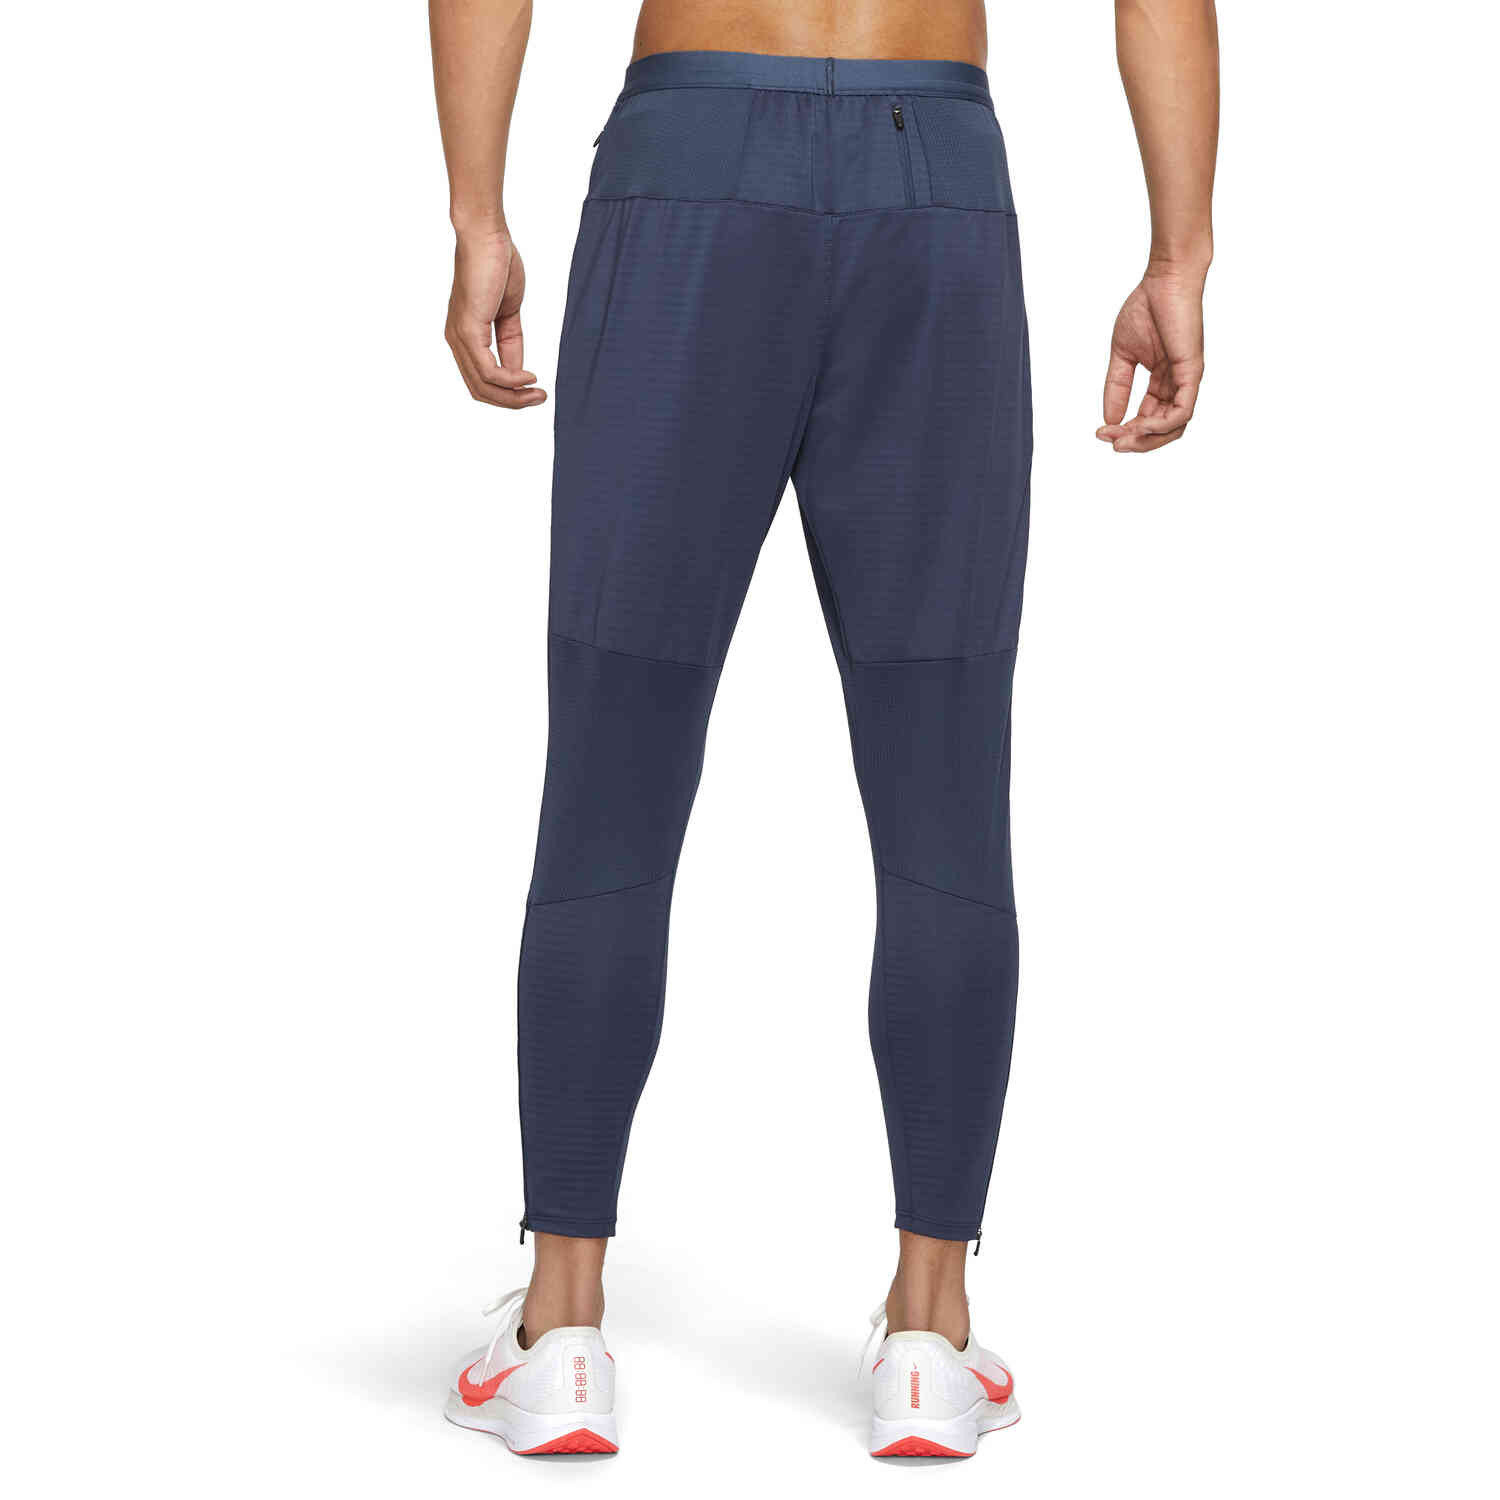 Nike PHENOM Knit Running Long Pants Gray BV4818-221 - KICKS CREW